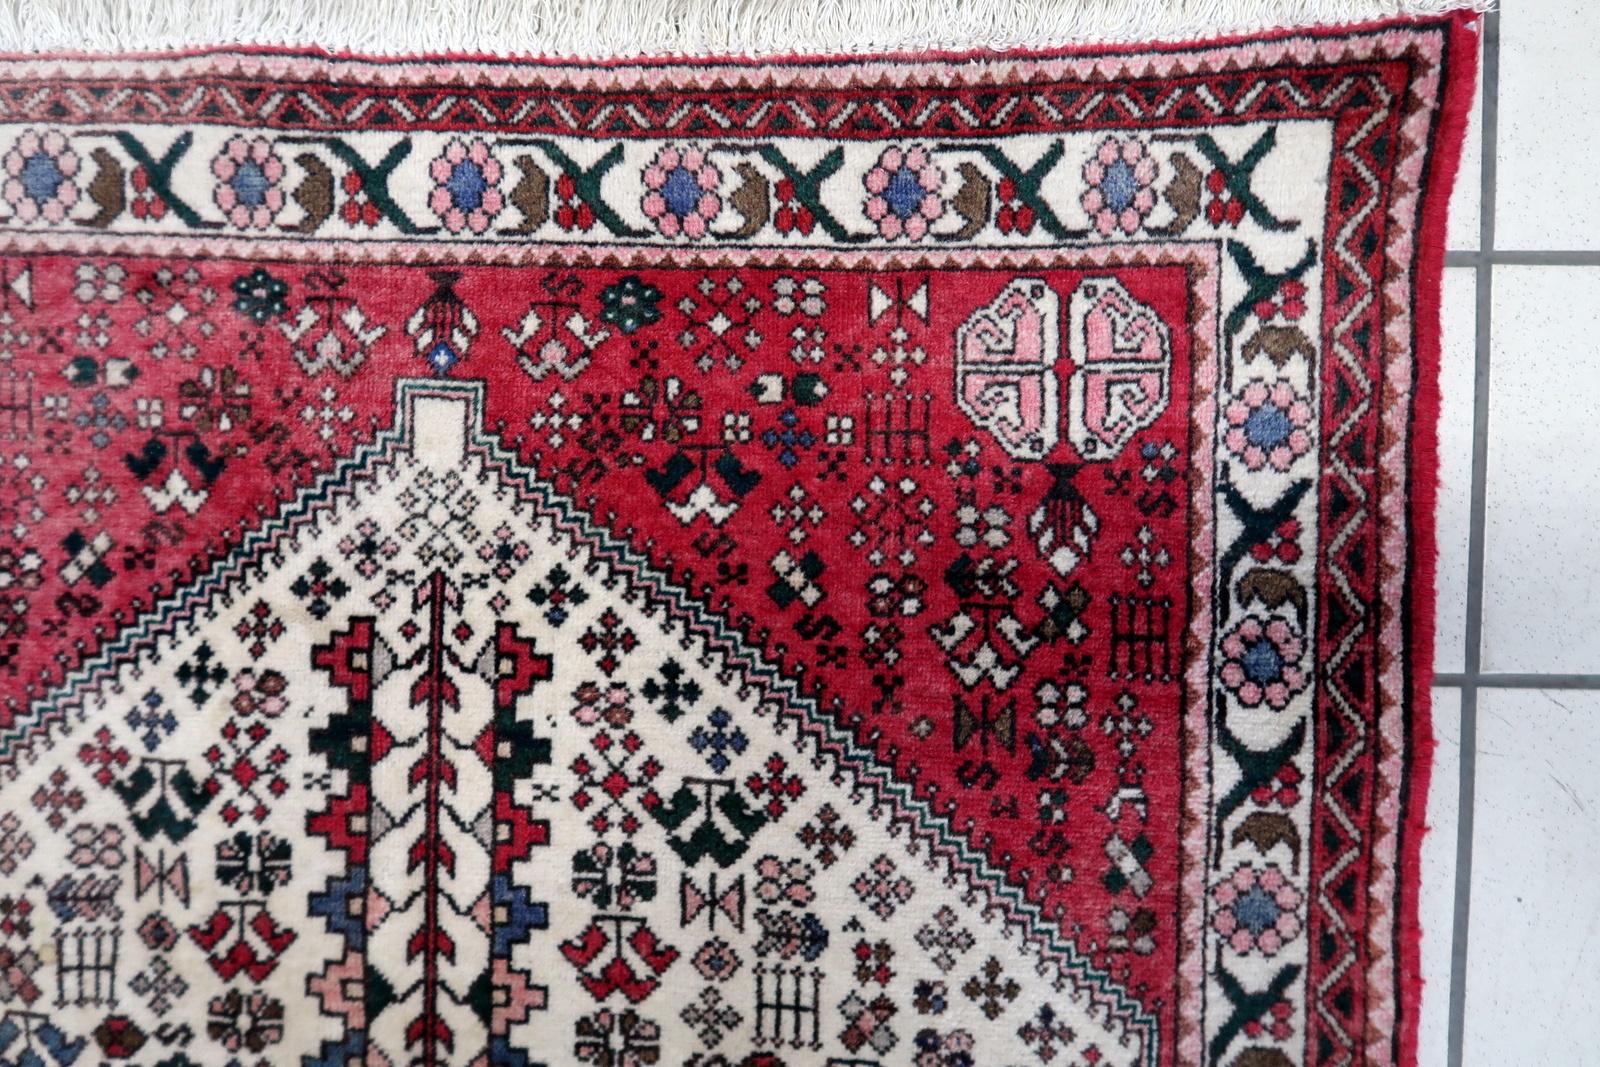 Handgefertigter Malayer-Teppich im persischen Vintage-Stil:

Abmessungen: Dieser sorgfältig gefertigte Teppich misst 3,2' x 4,9' (98cm x 150cm) und eignet sich daher für kleinere Räume oder als Akzentstück.
Kunstfertigkeit: Dieser aus den 1970er